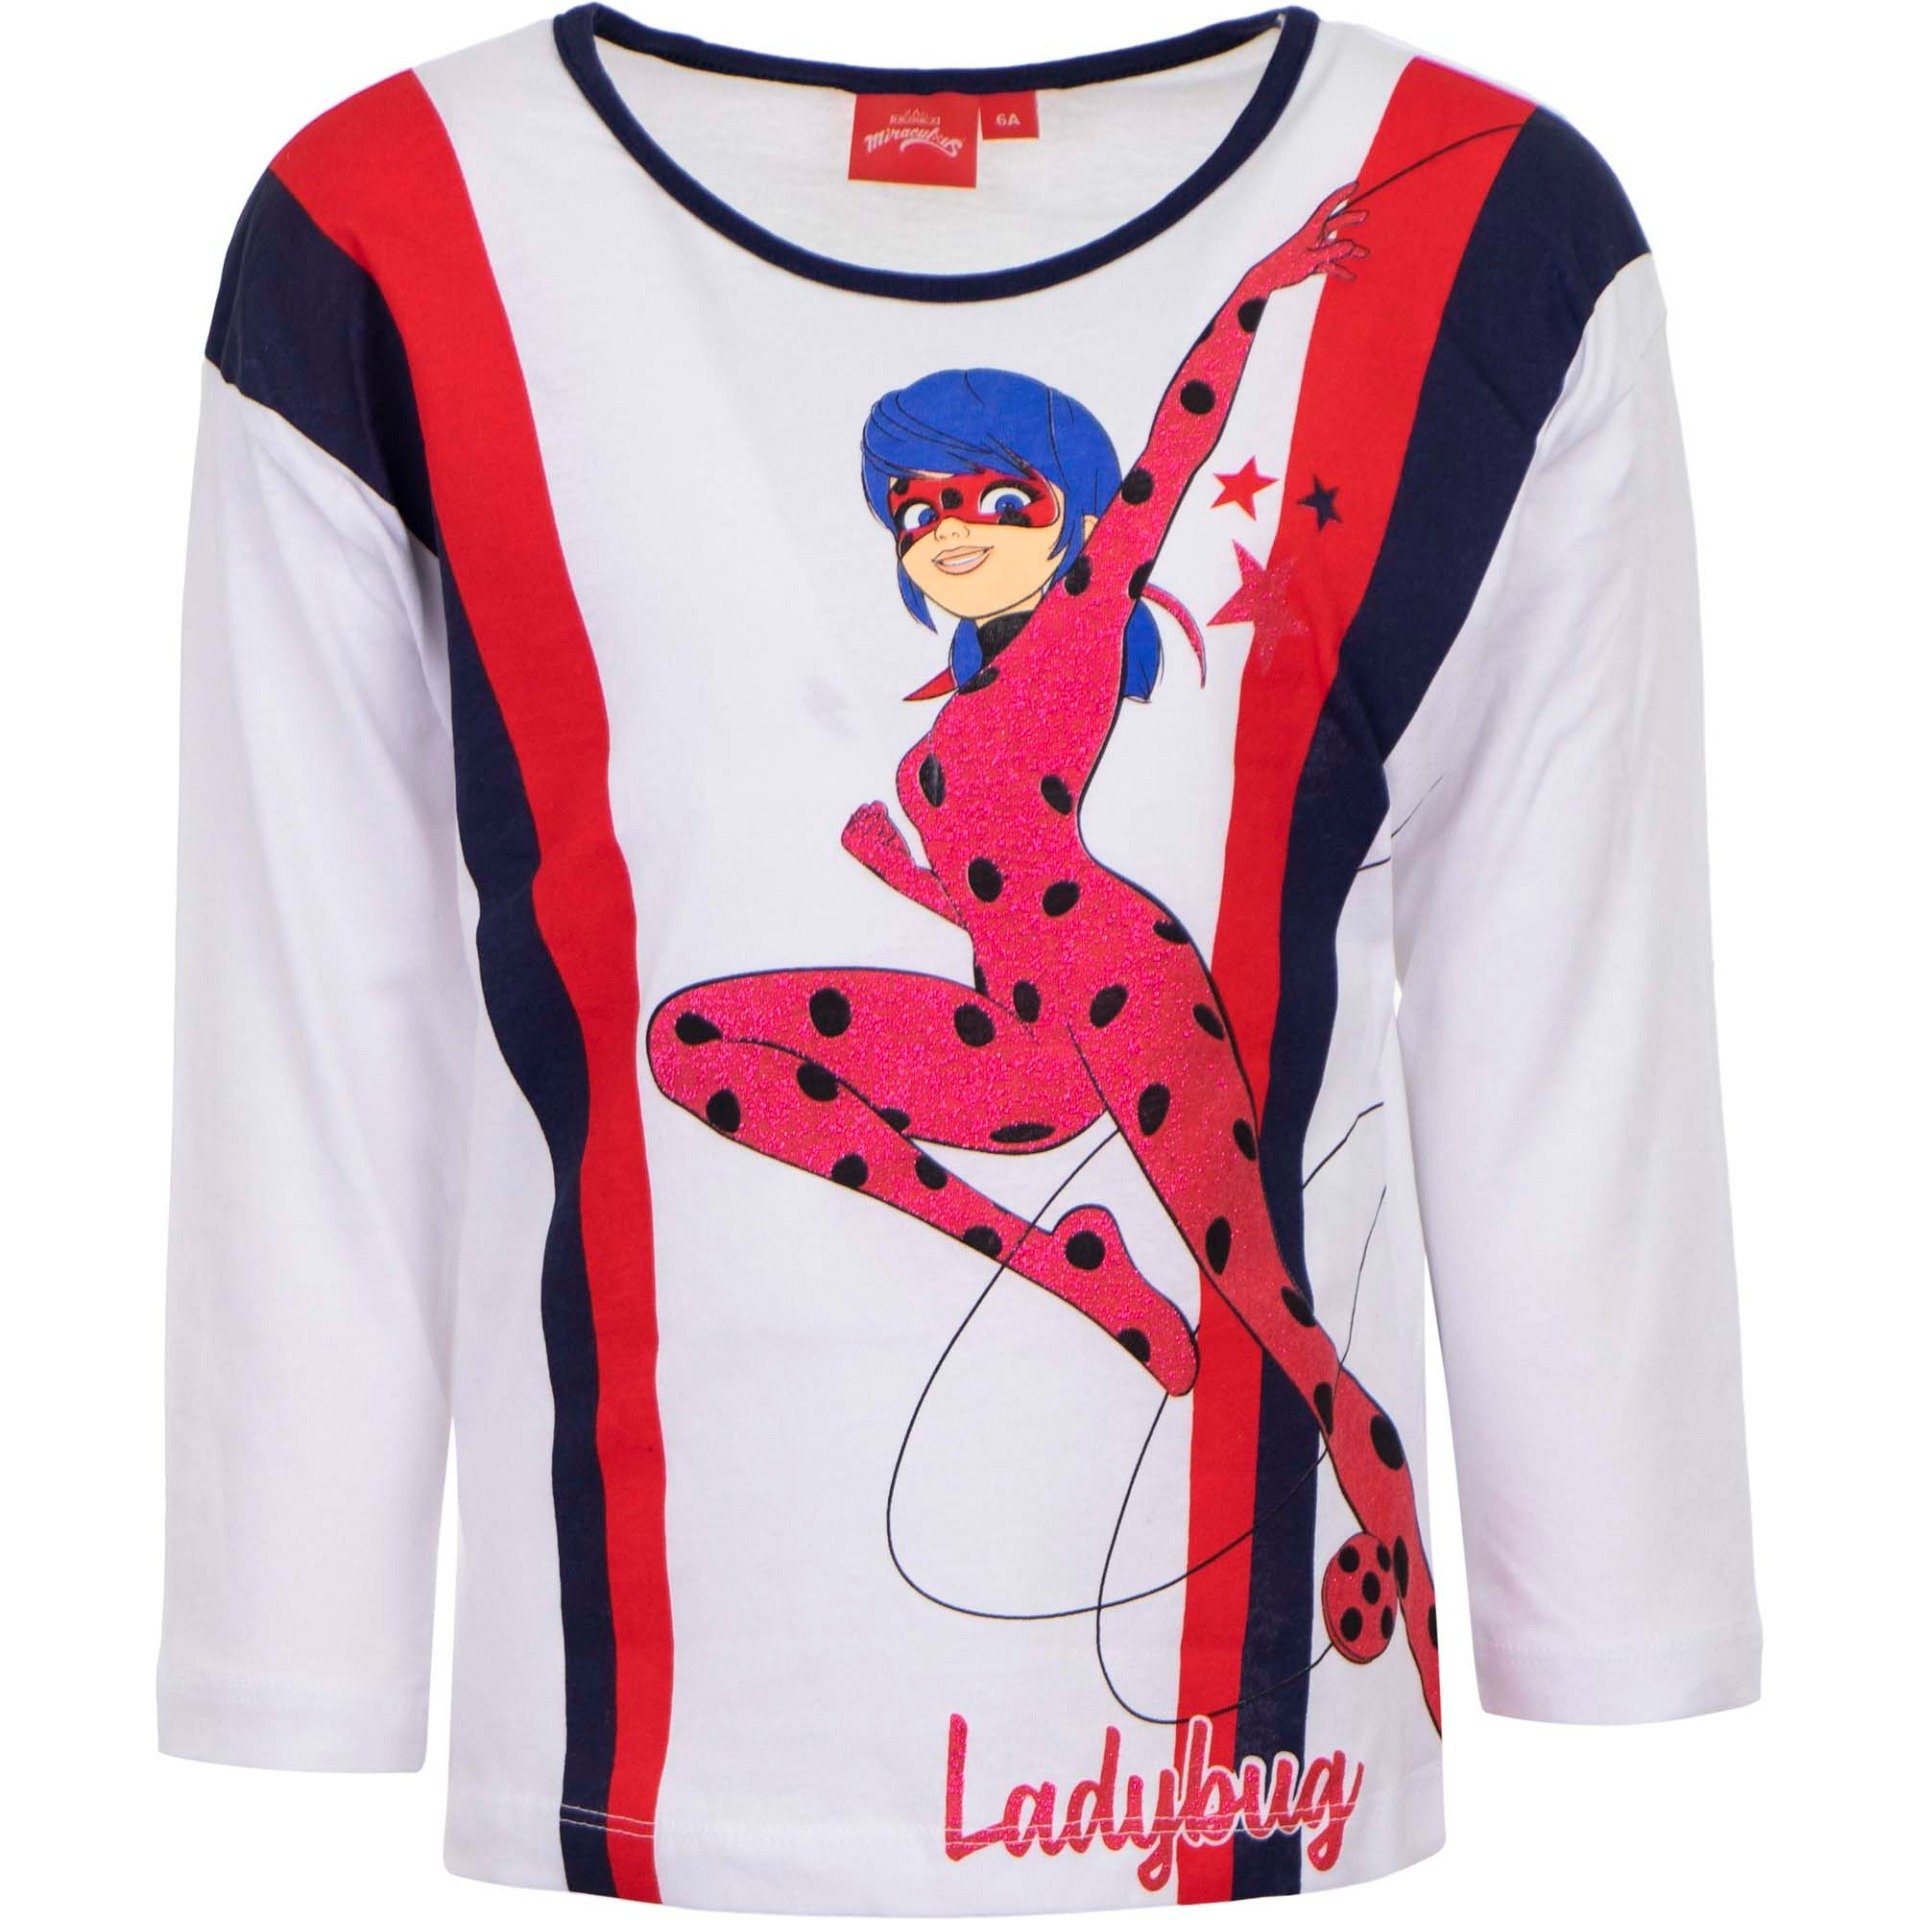 Miraculous - Ladybug Langarmshirt Kinder Mädchen Shirt Gr. 104 bis 128, 100% Baumwolle, in Dunkelblau oder Weiß